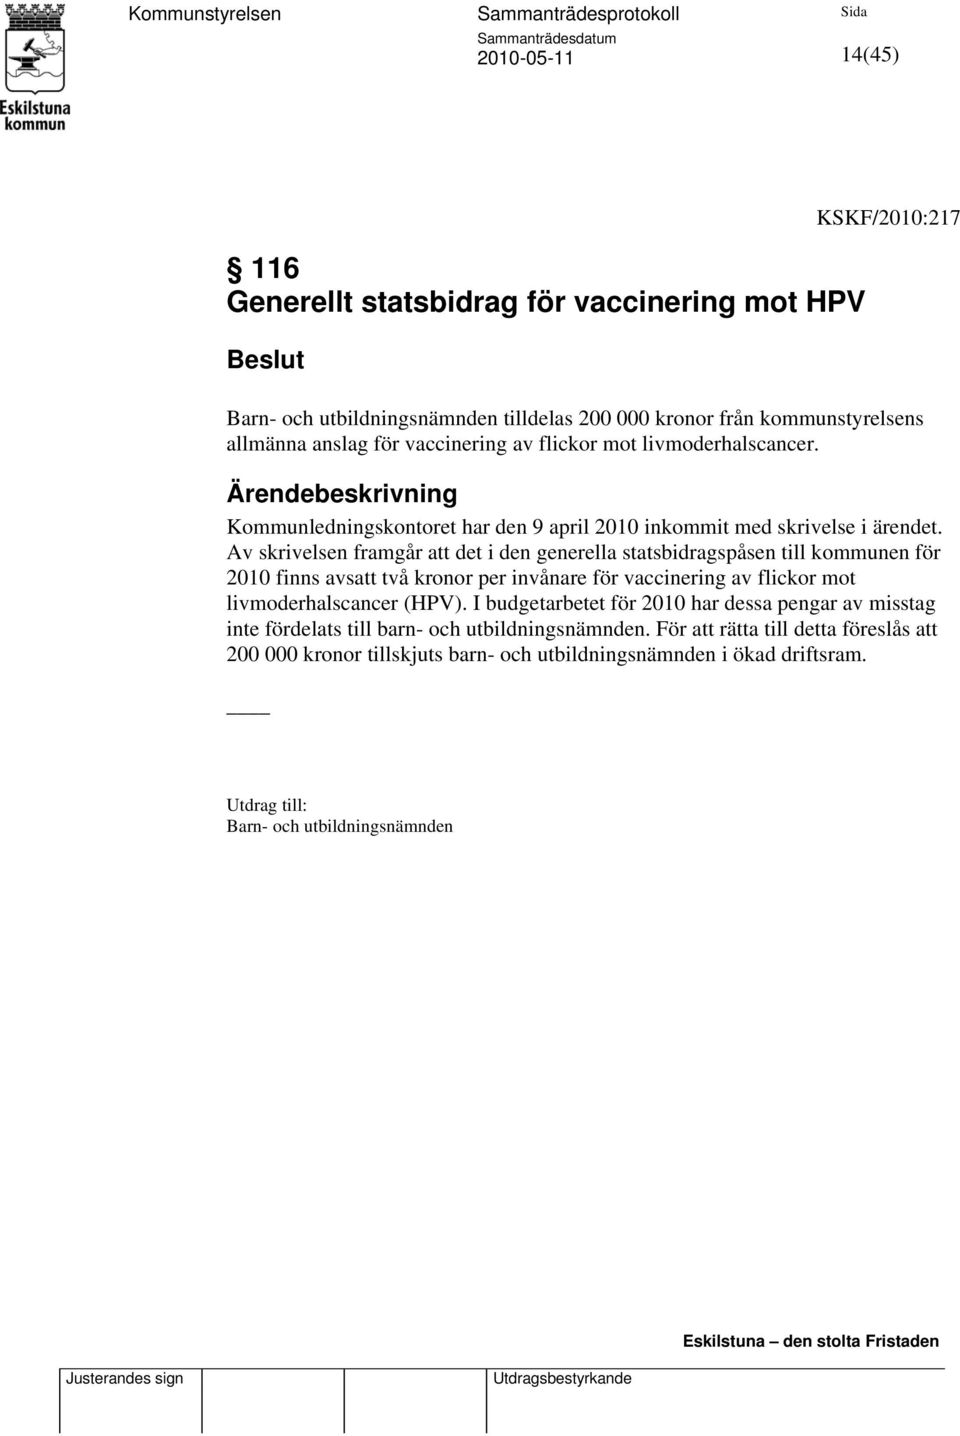 Av skrivelsen framgår att det i den generella statsbidragspåsen till kommunen för 2010 finns avsatt två kronor per invånare för vaccinering av flickor mot livmoderhalscancer (HPV).